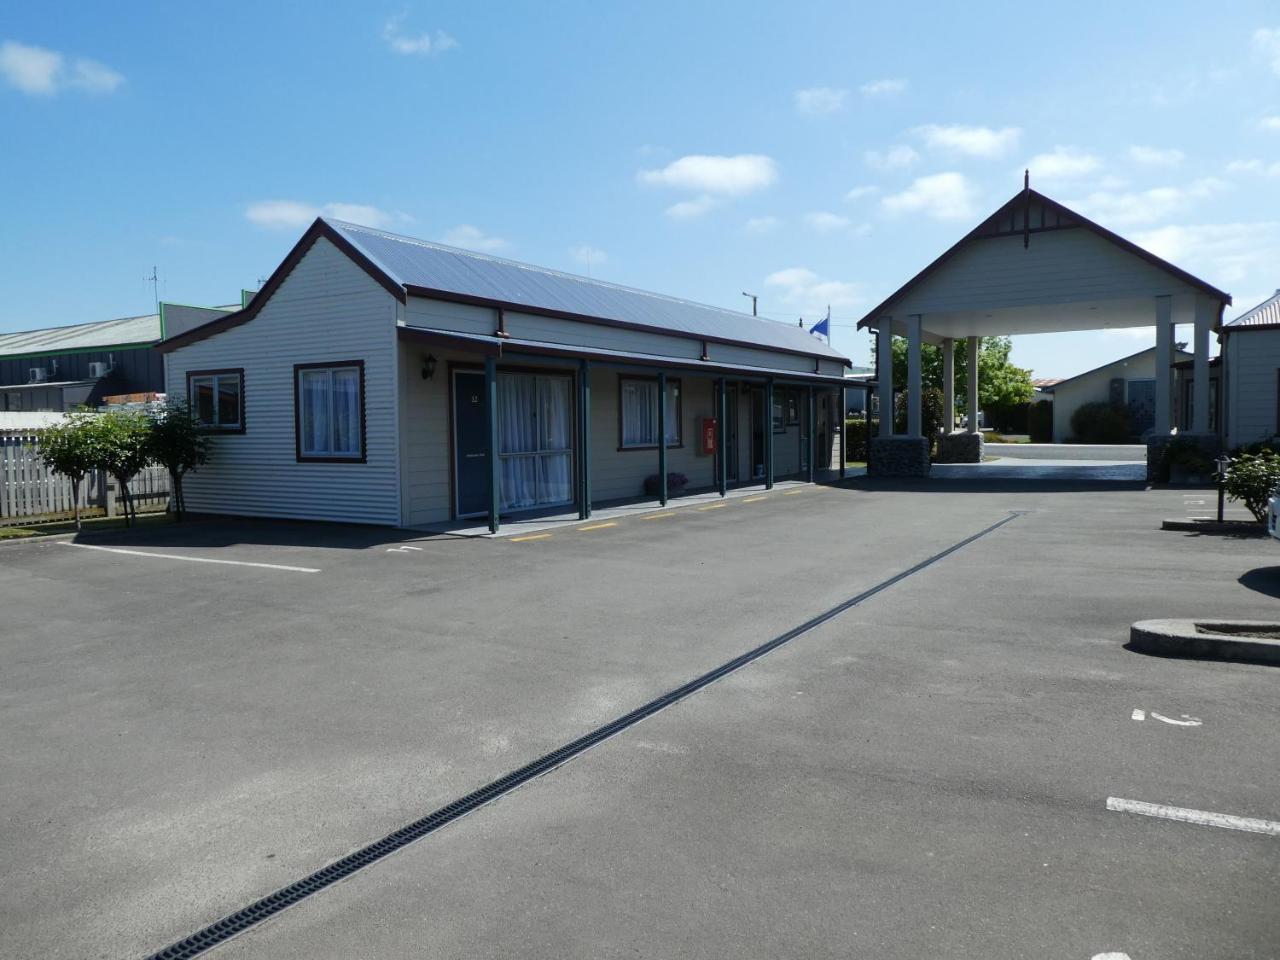 Fergussons Motor Lodge Waipukurau Ngoại thất bức ảnh